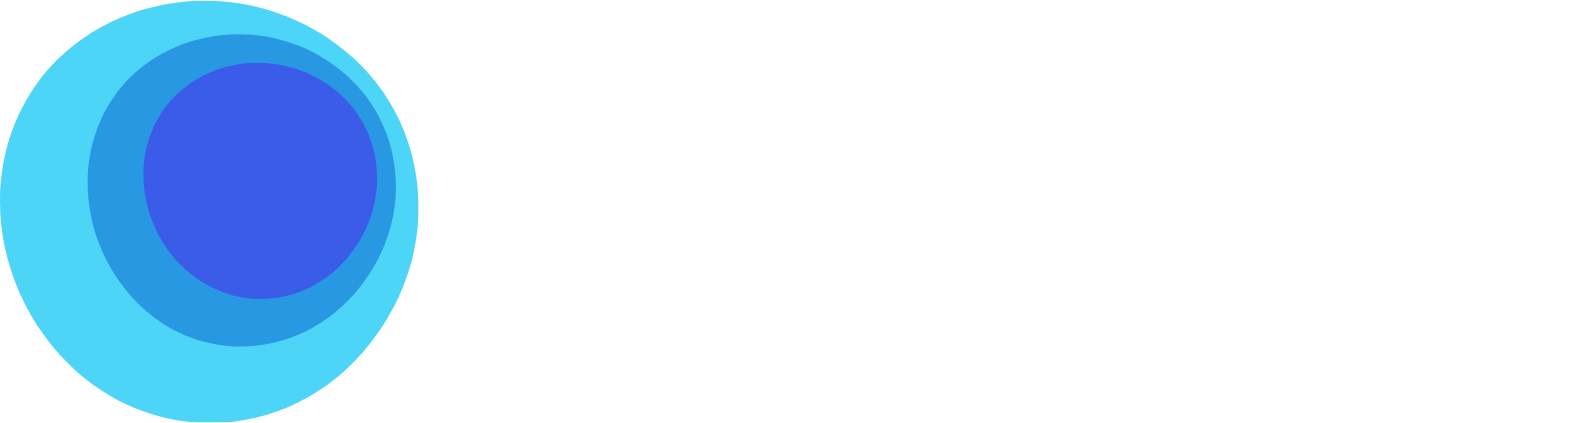 LabCorp logo grand pour les fonds sombres (PNG transparent)